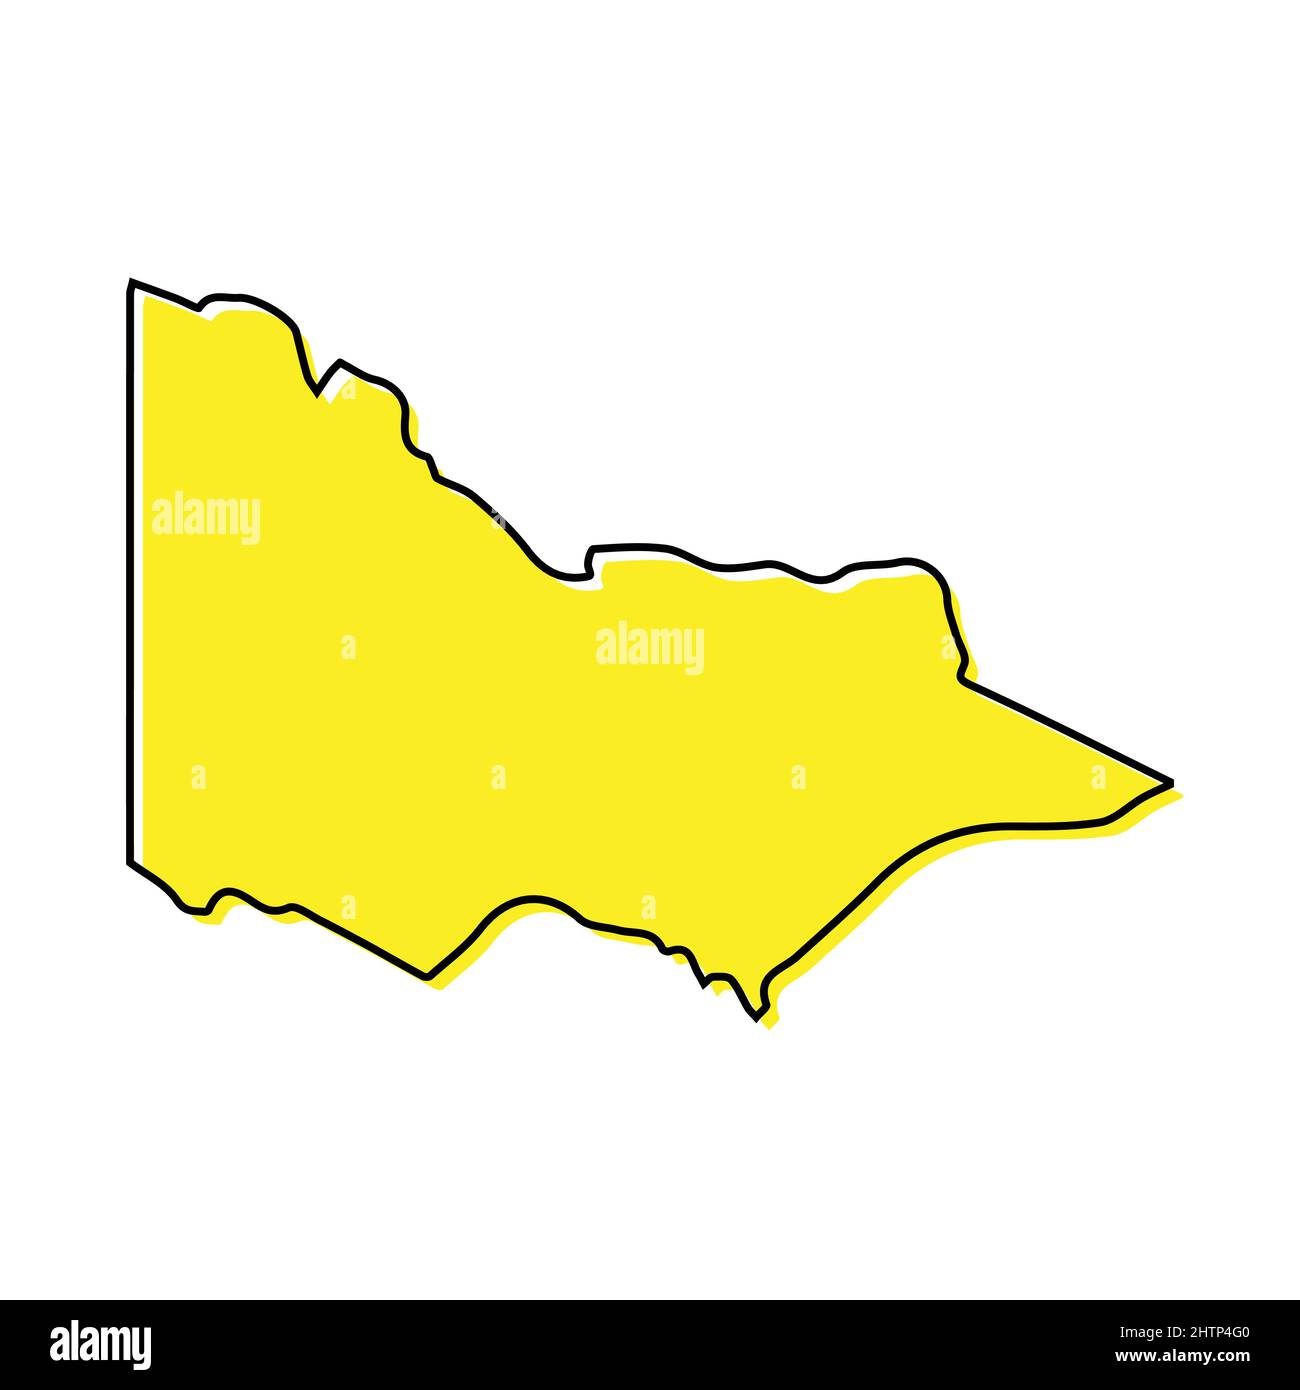 Einfache Übersichtskarte von Victoria ist ein Bundesstaat Australien. Stilisiertes, minimalistisches Liniendesign Stock Vektor